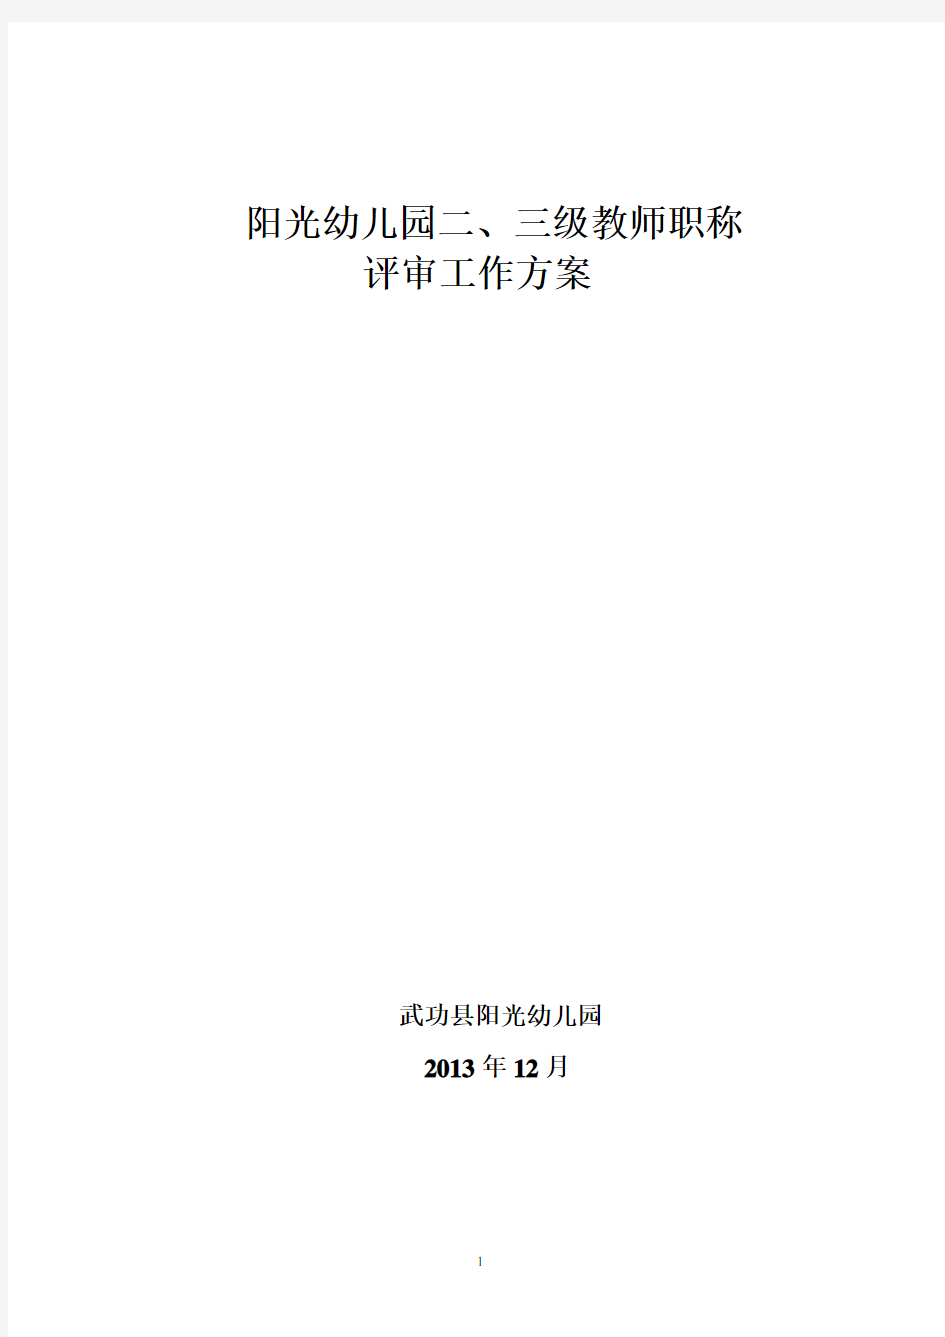 阳光幼儿园二三级教师职称评审工作方案(2020年整理).pdf